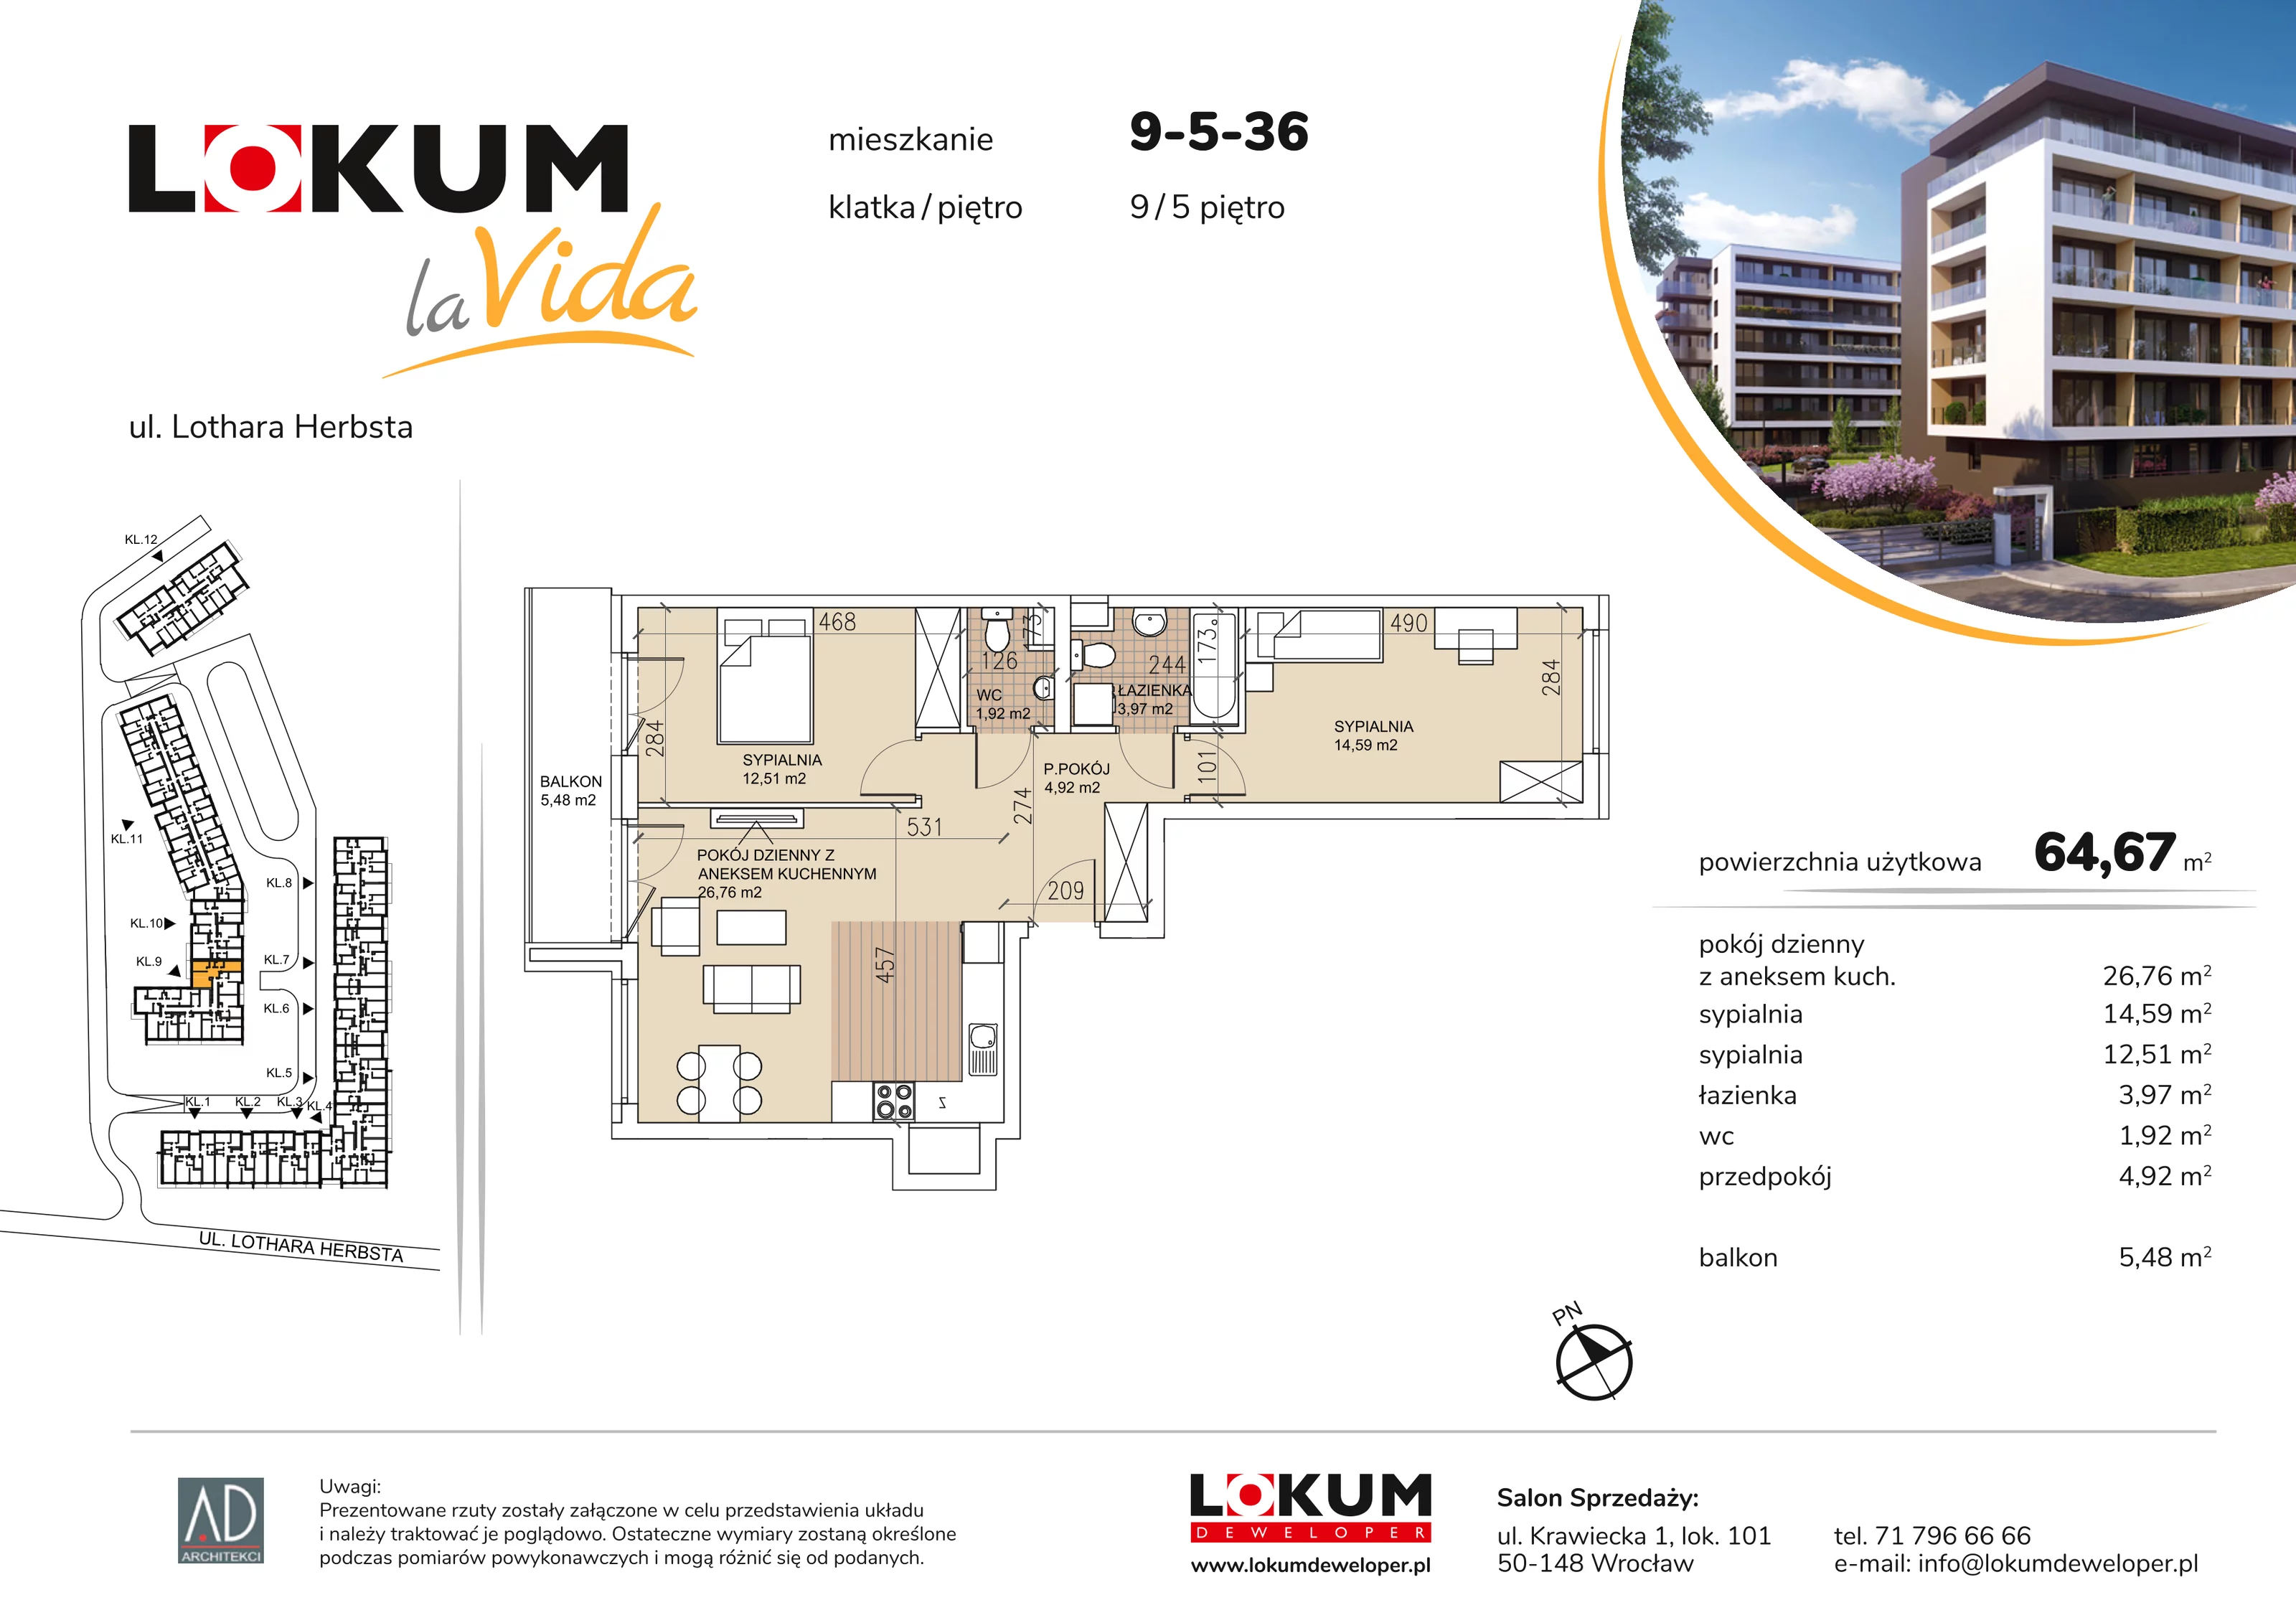 Mieszkanie 64,67 m², piętro 5, oferta nr 9-5-36, Lokum la Vida, Wrocław, Sołtysowice, ul. Lothara Herbsta